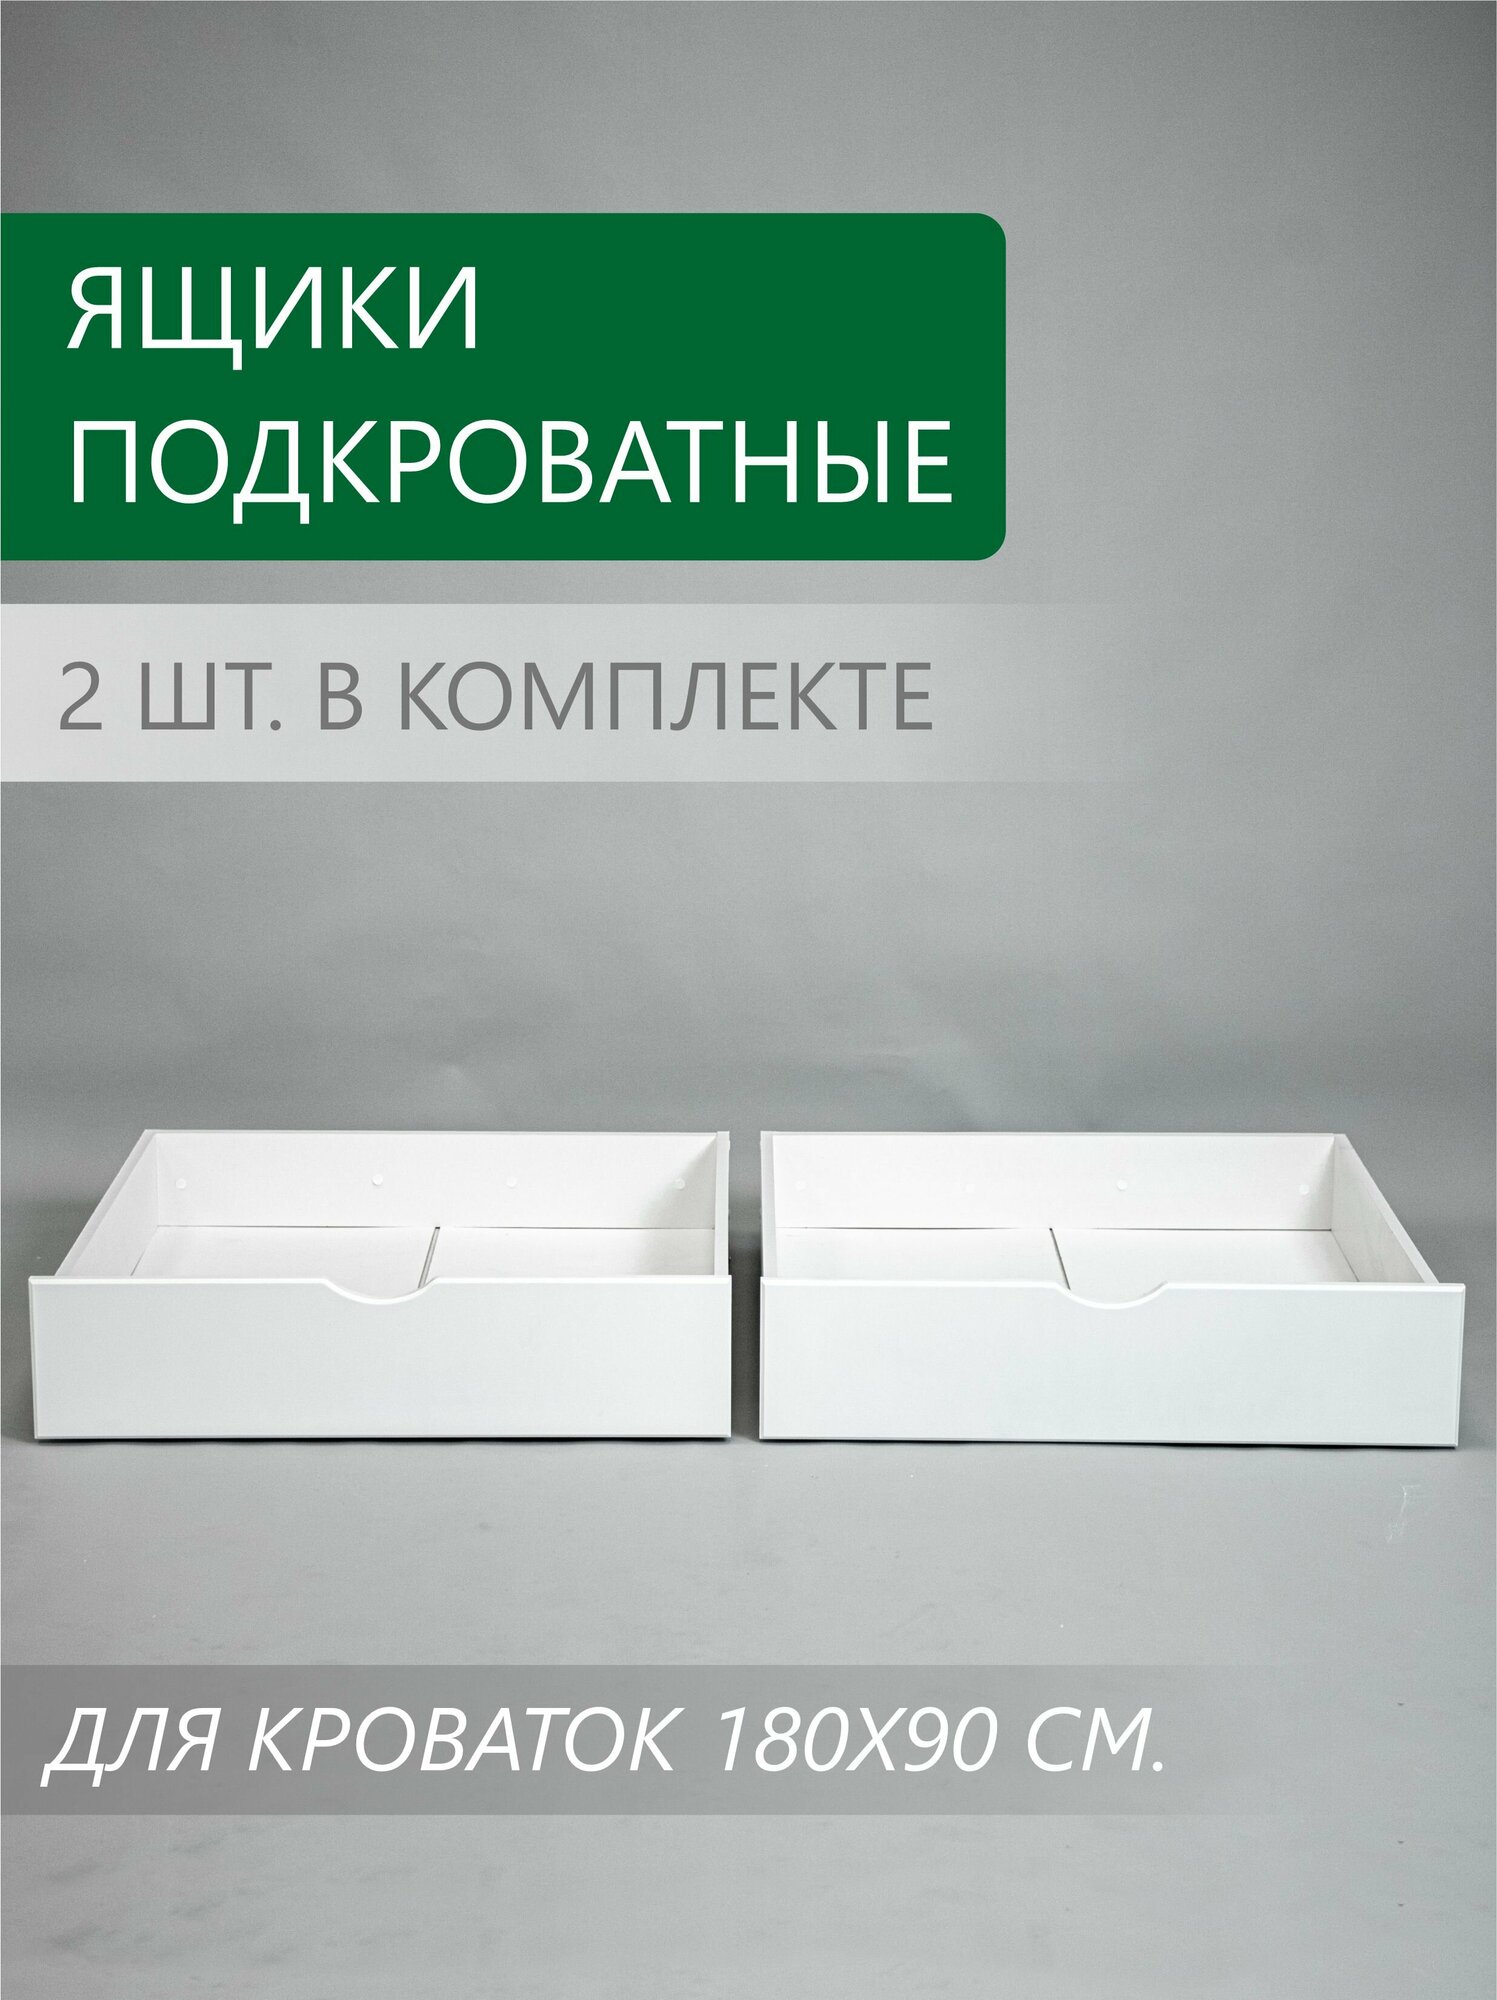 Подкроватные выкатные ящики для кроватей модельного ряда Соня 180x90